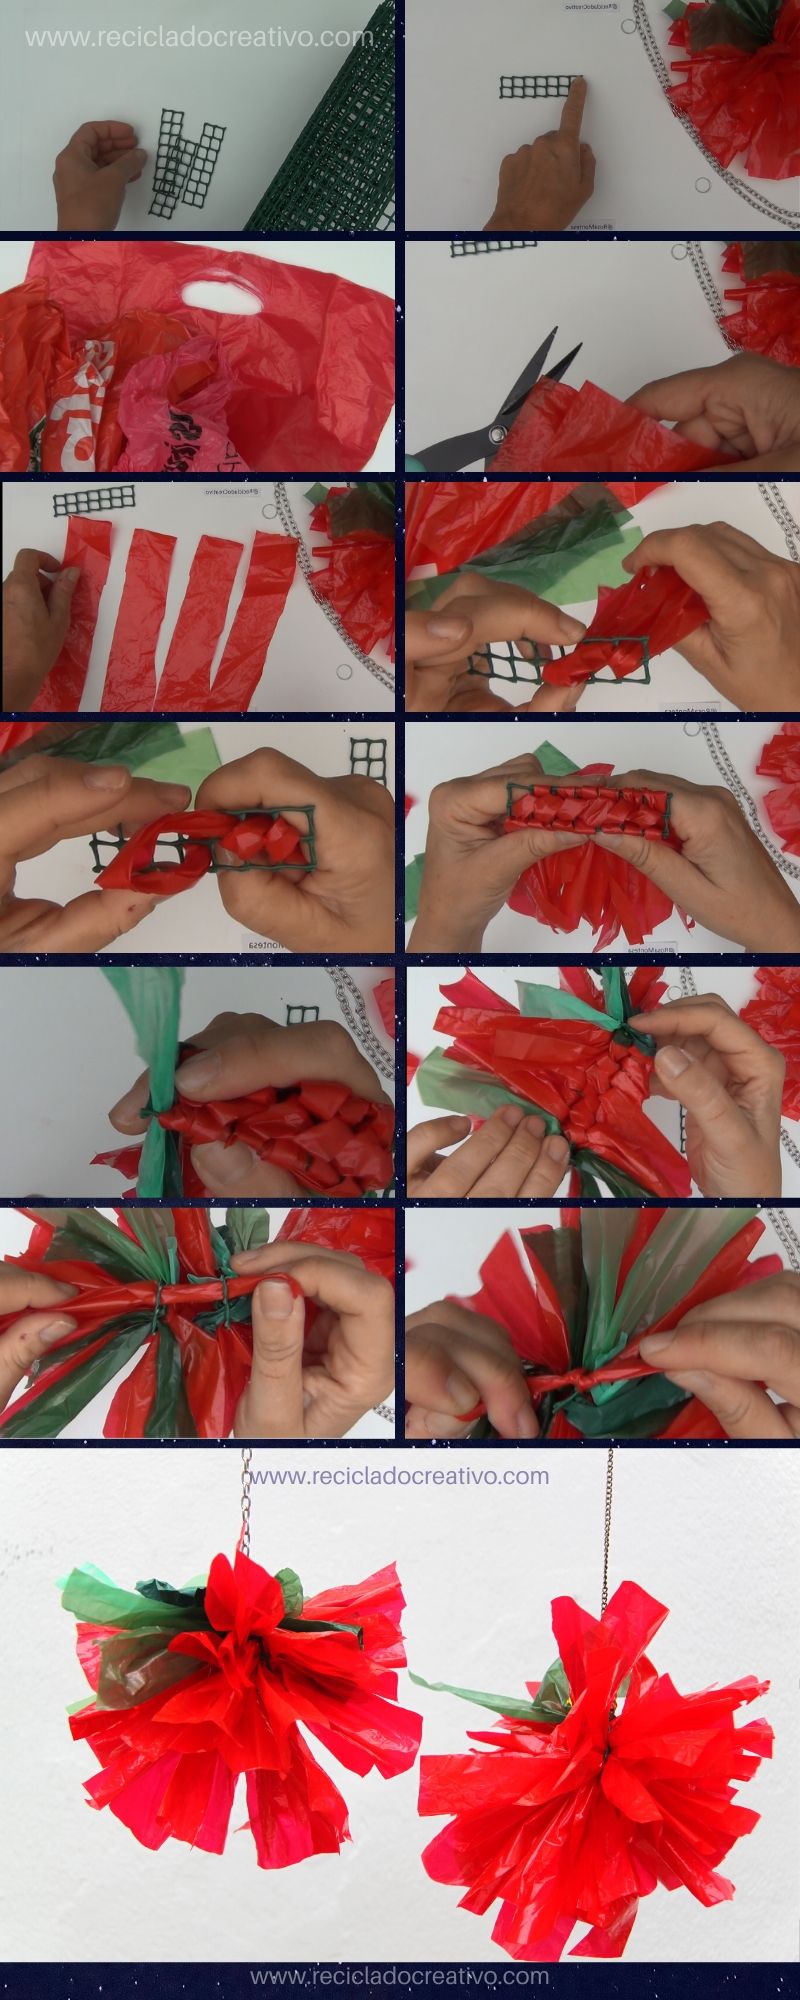 Paso a paso: flores de Navidad hechas con bolsas de plástico de color rojo